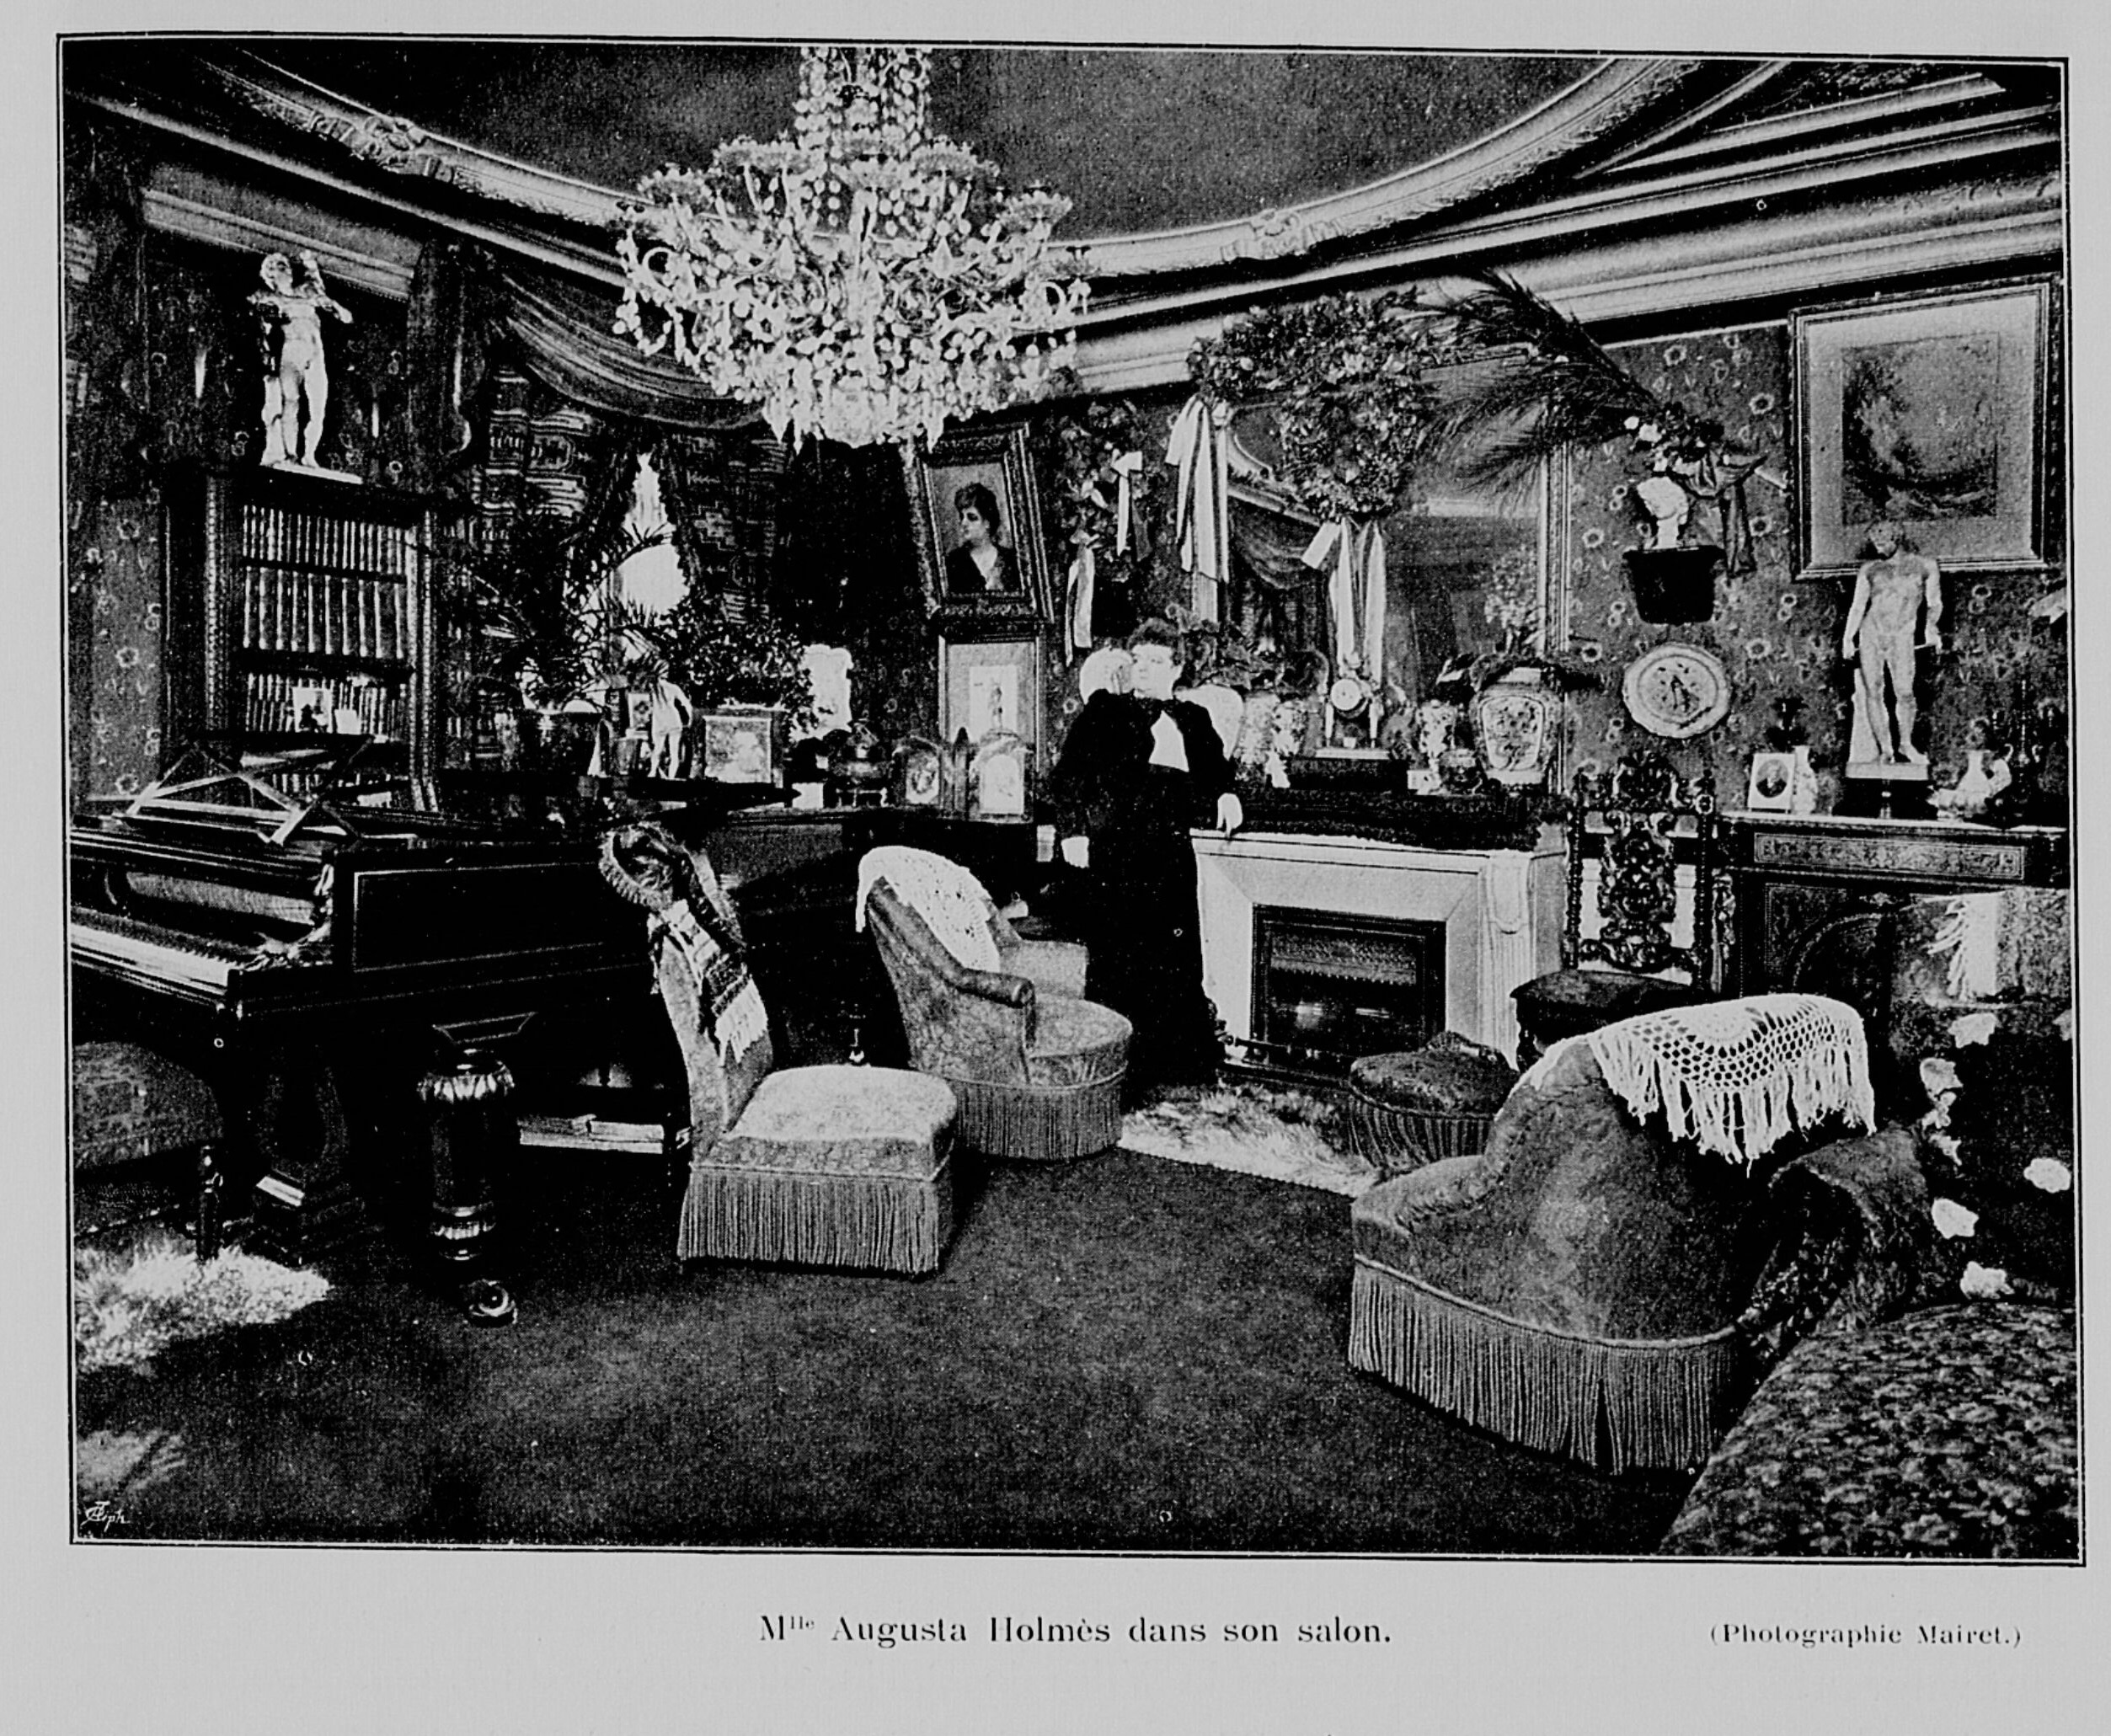 Mlle Augusta Holmès dans son salon